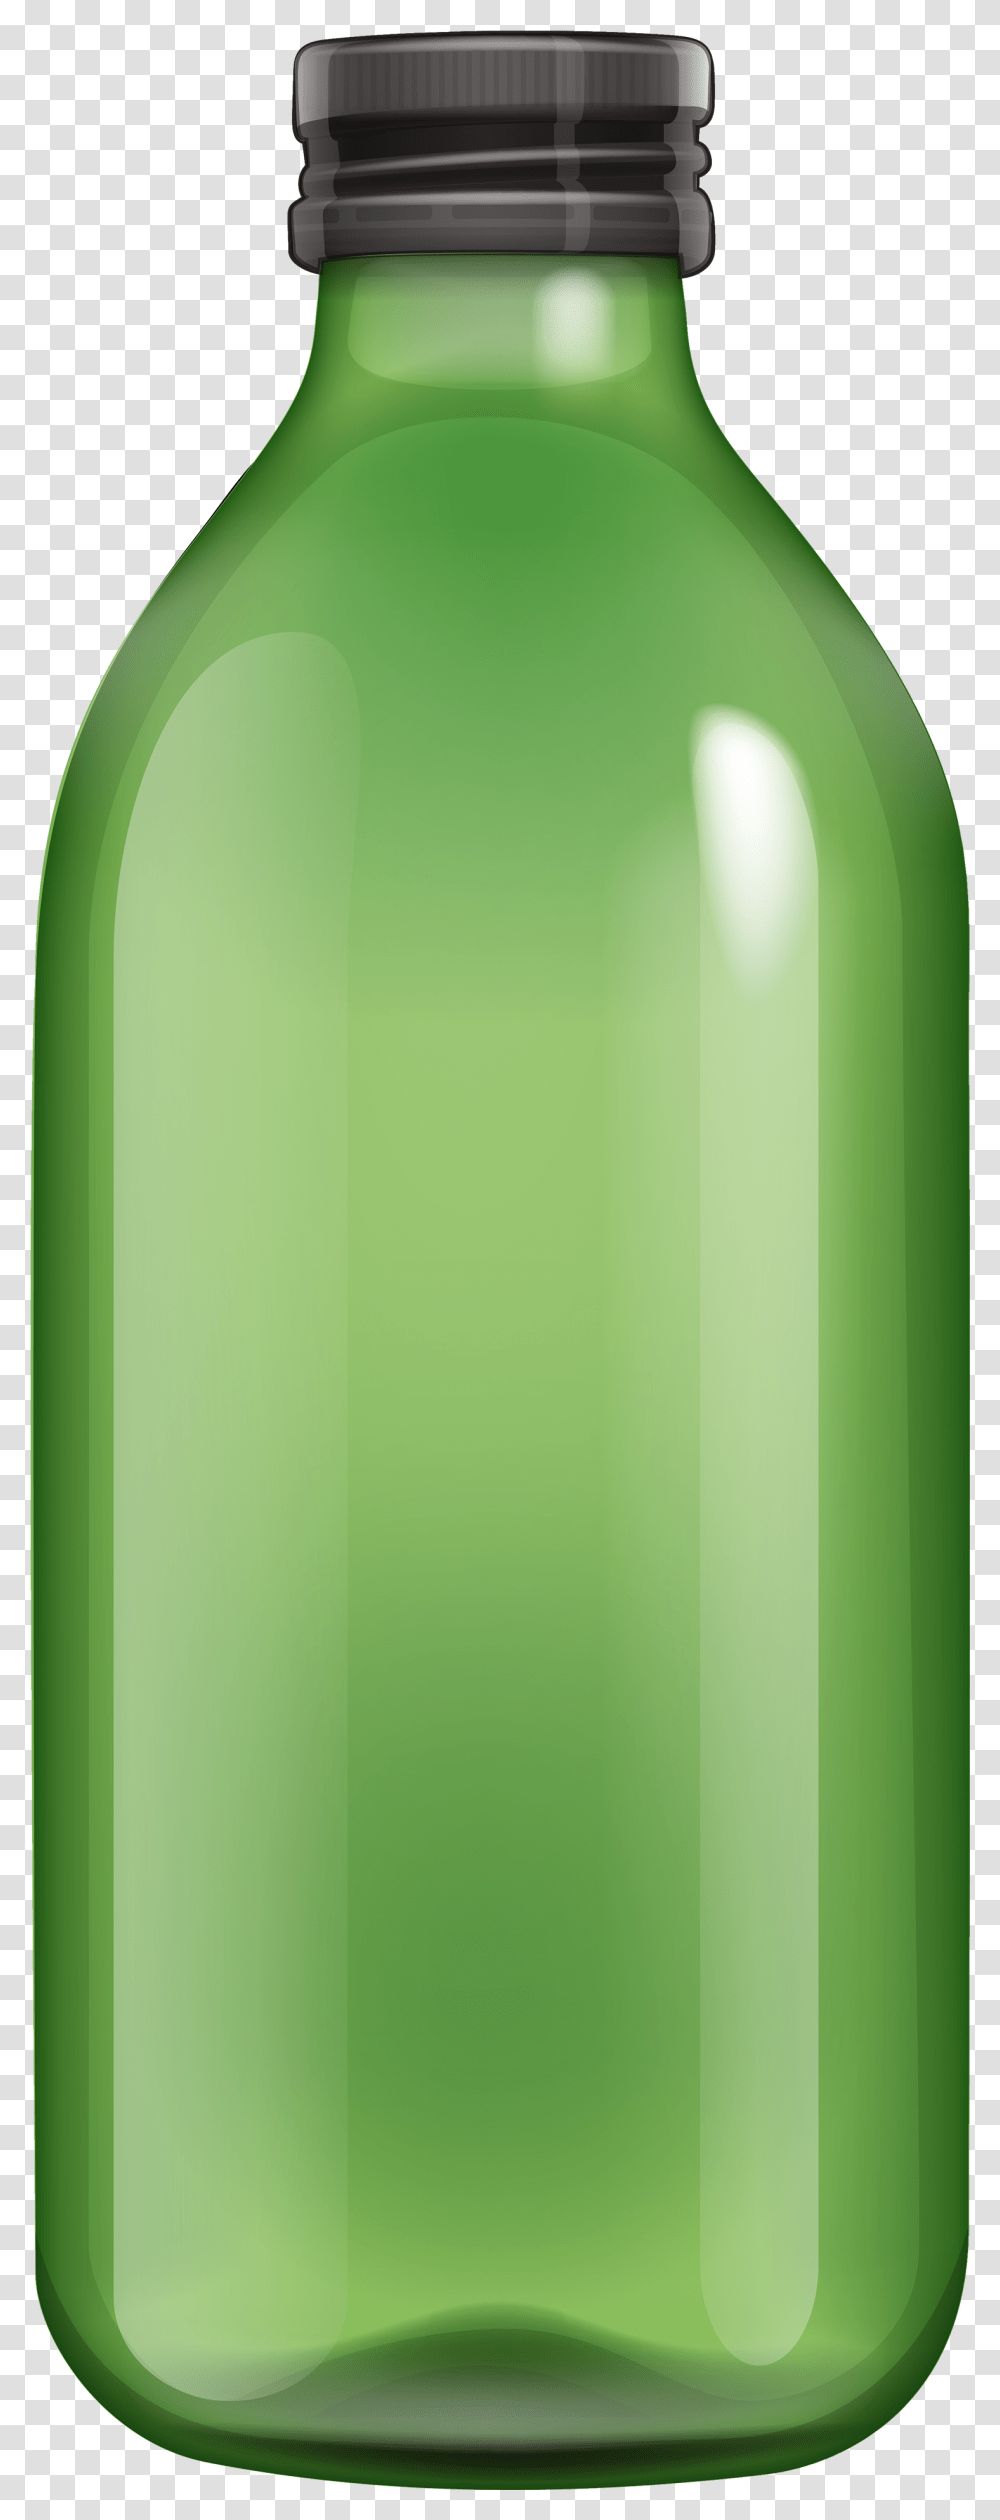 Bottle Green Bottle Clipart, Beer, Alcohol, Beverage, Drink Transparent Png